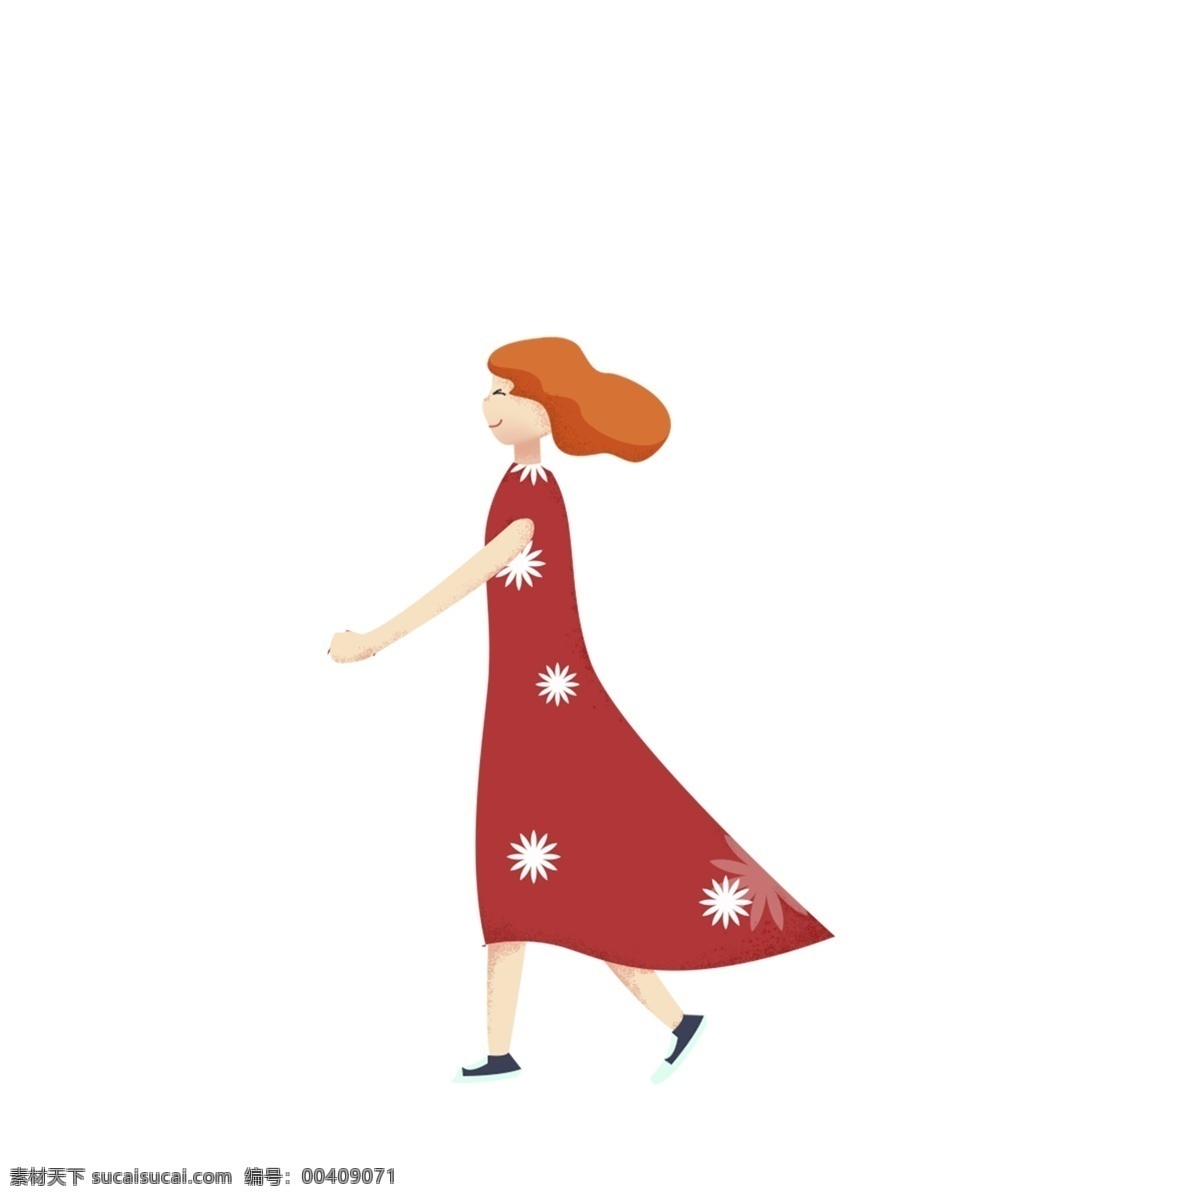 红色 裙子 女孩 免 抠 图 红色头发 卡通人物 动漫人物 时尚女孩 漂亮的裙子 大裙子 红色裙子女孩 免抠图